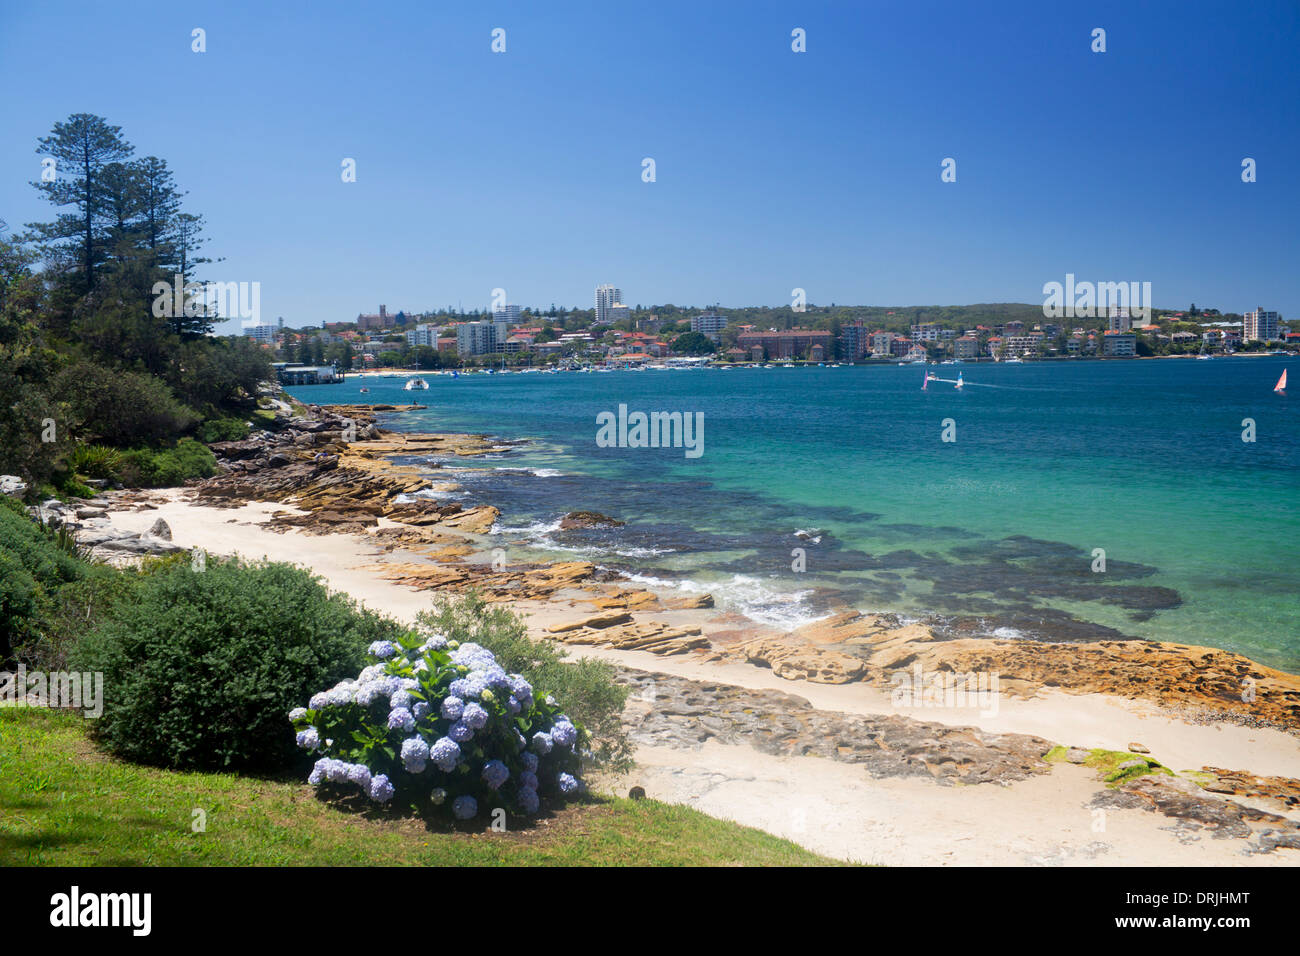 Delwood Beach donnant sur Manly Cove waters à North Head, Manly Sydney NSW Australie Nouvelle Galles du Sud Banque D'Images